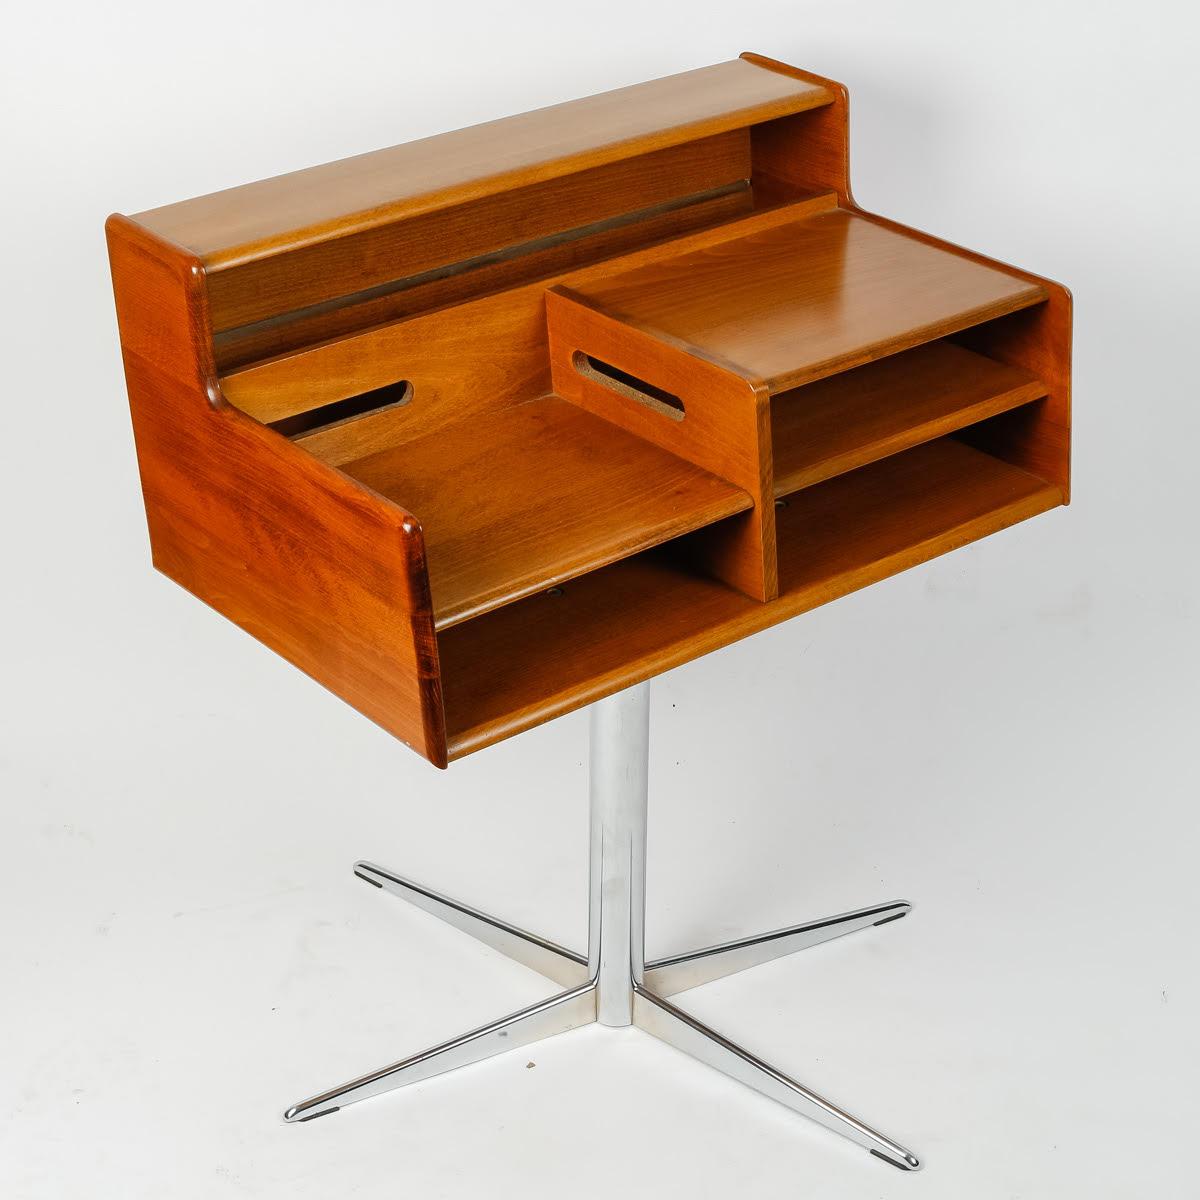 Kleiner Schreibtisch aus den 1970er Jahren.

Kleiner Schreibtisch aus hellem Holz mit verchromten Metallbeinen.
h: 76cm, B: 60cm, T: 40cm